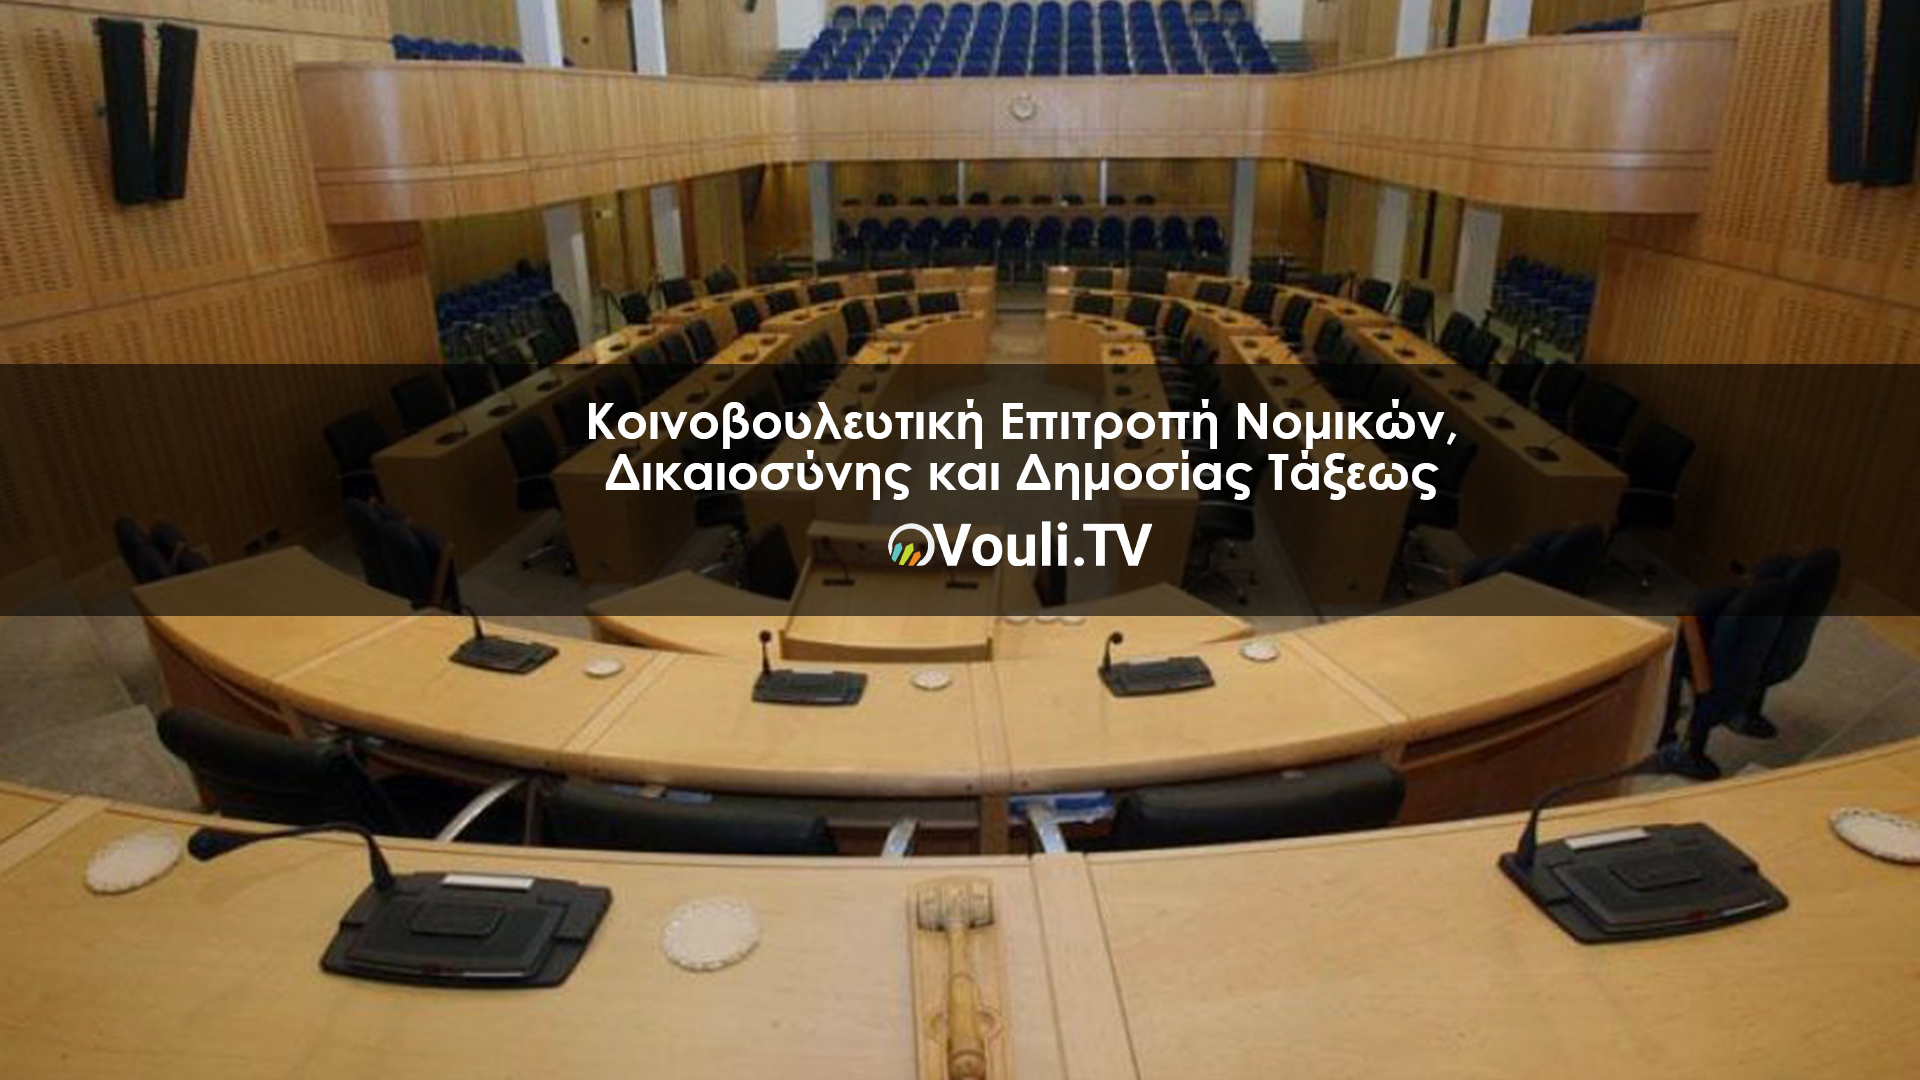 Κοινοβουλευτικής Επιτροπής Νομικών, Δικαιοσύνης και Δημοσίας Τάξεως | Vouli report 11/05/2022